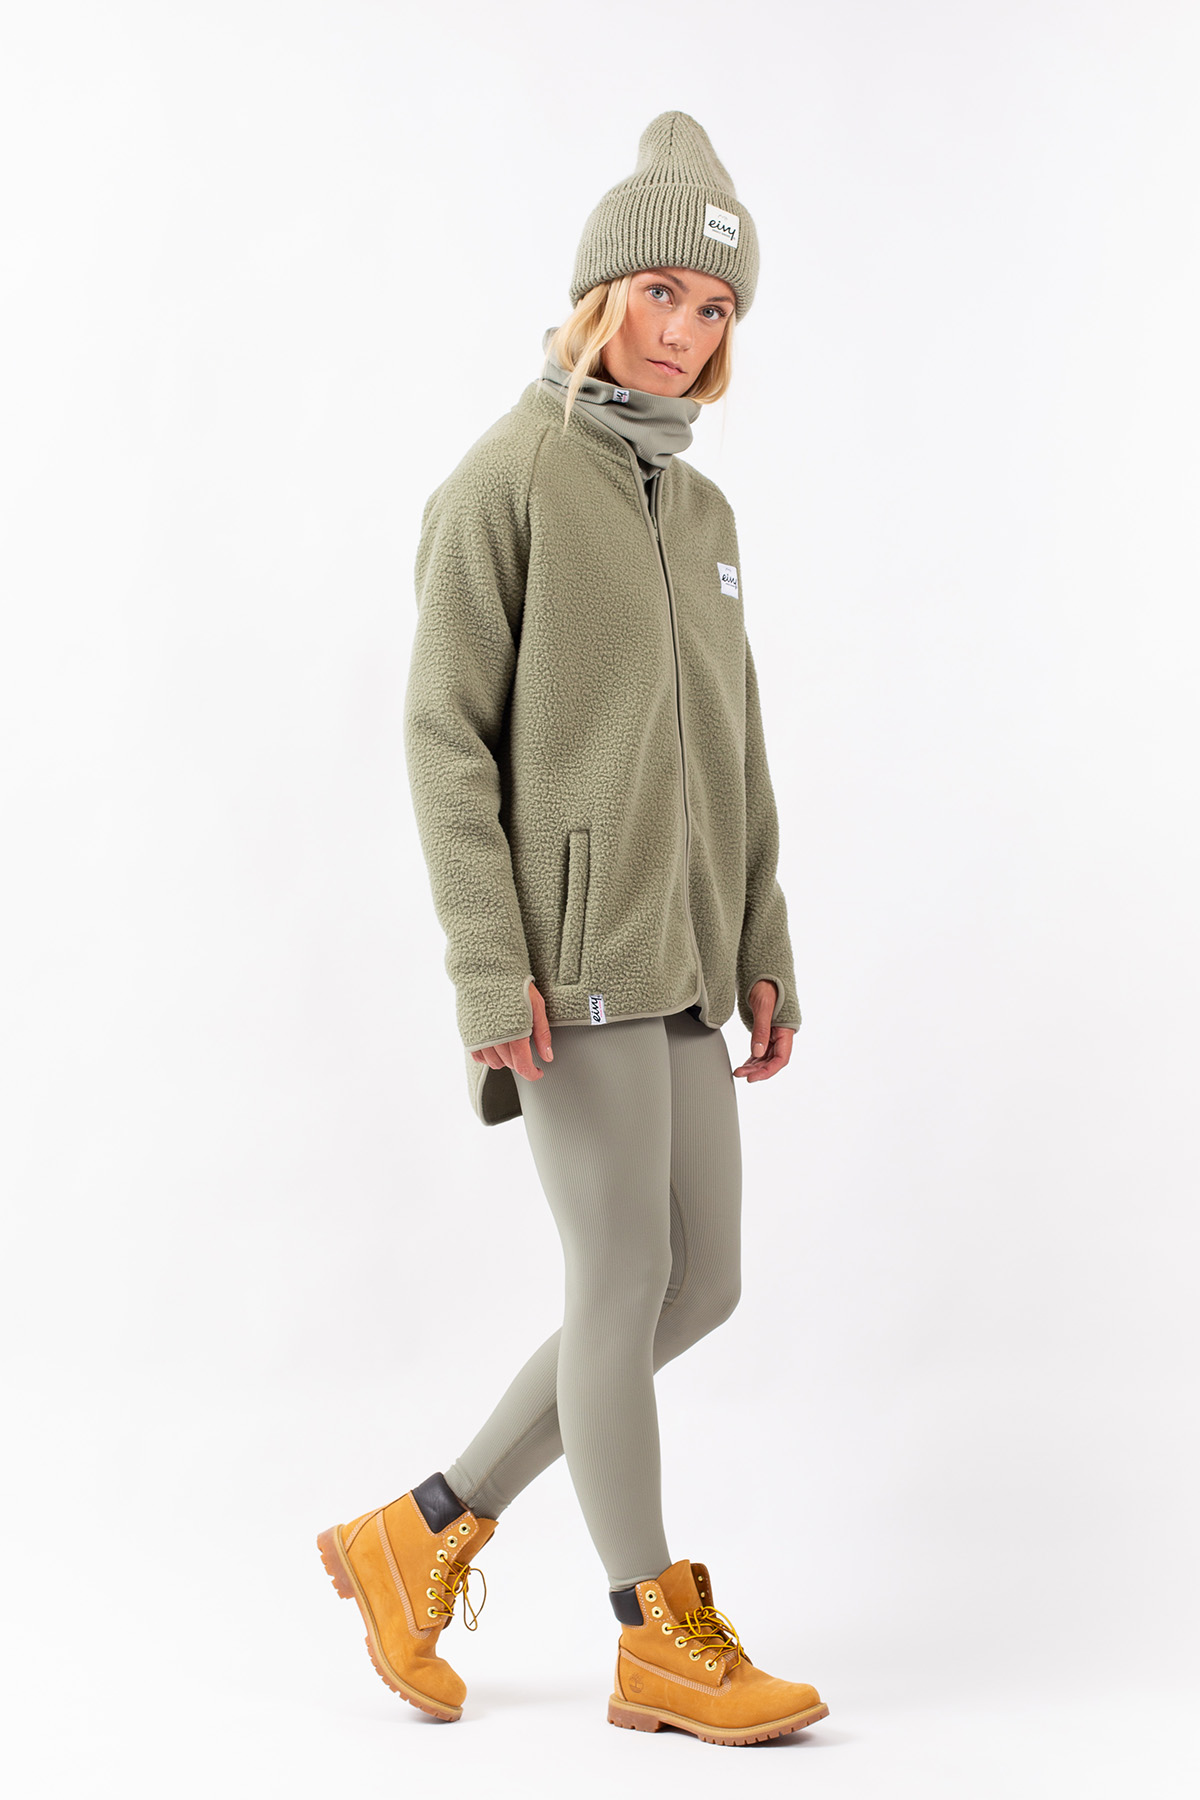 Fleece for women - Snowboard clothes | Eivy